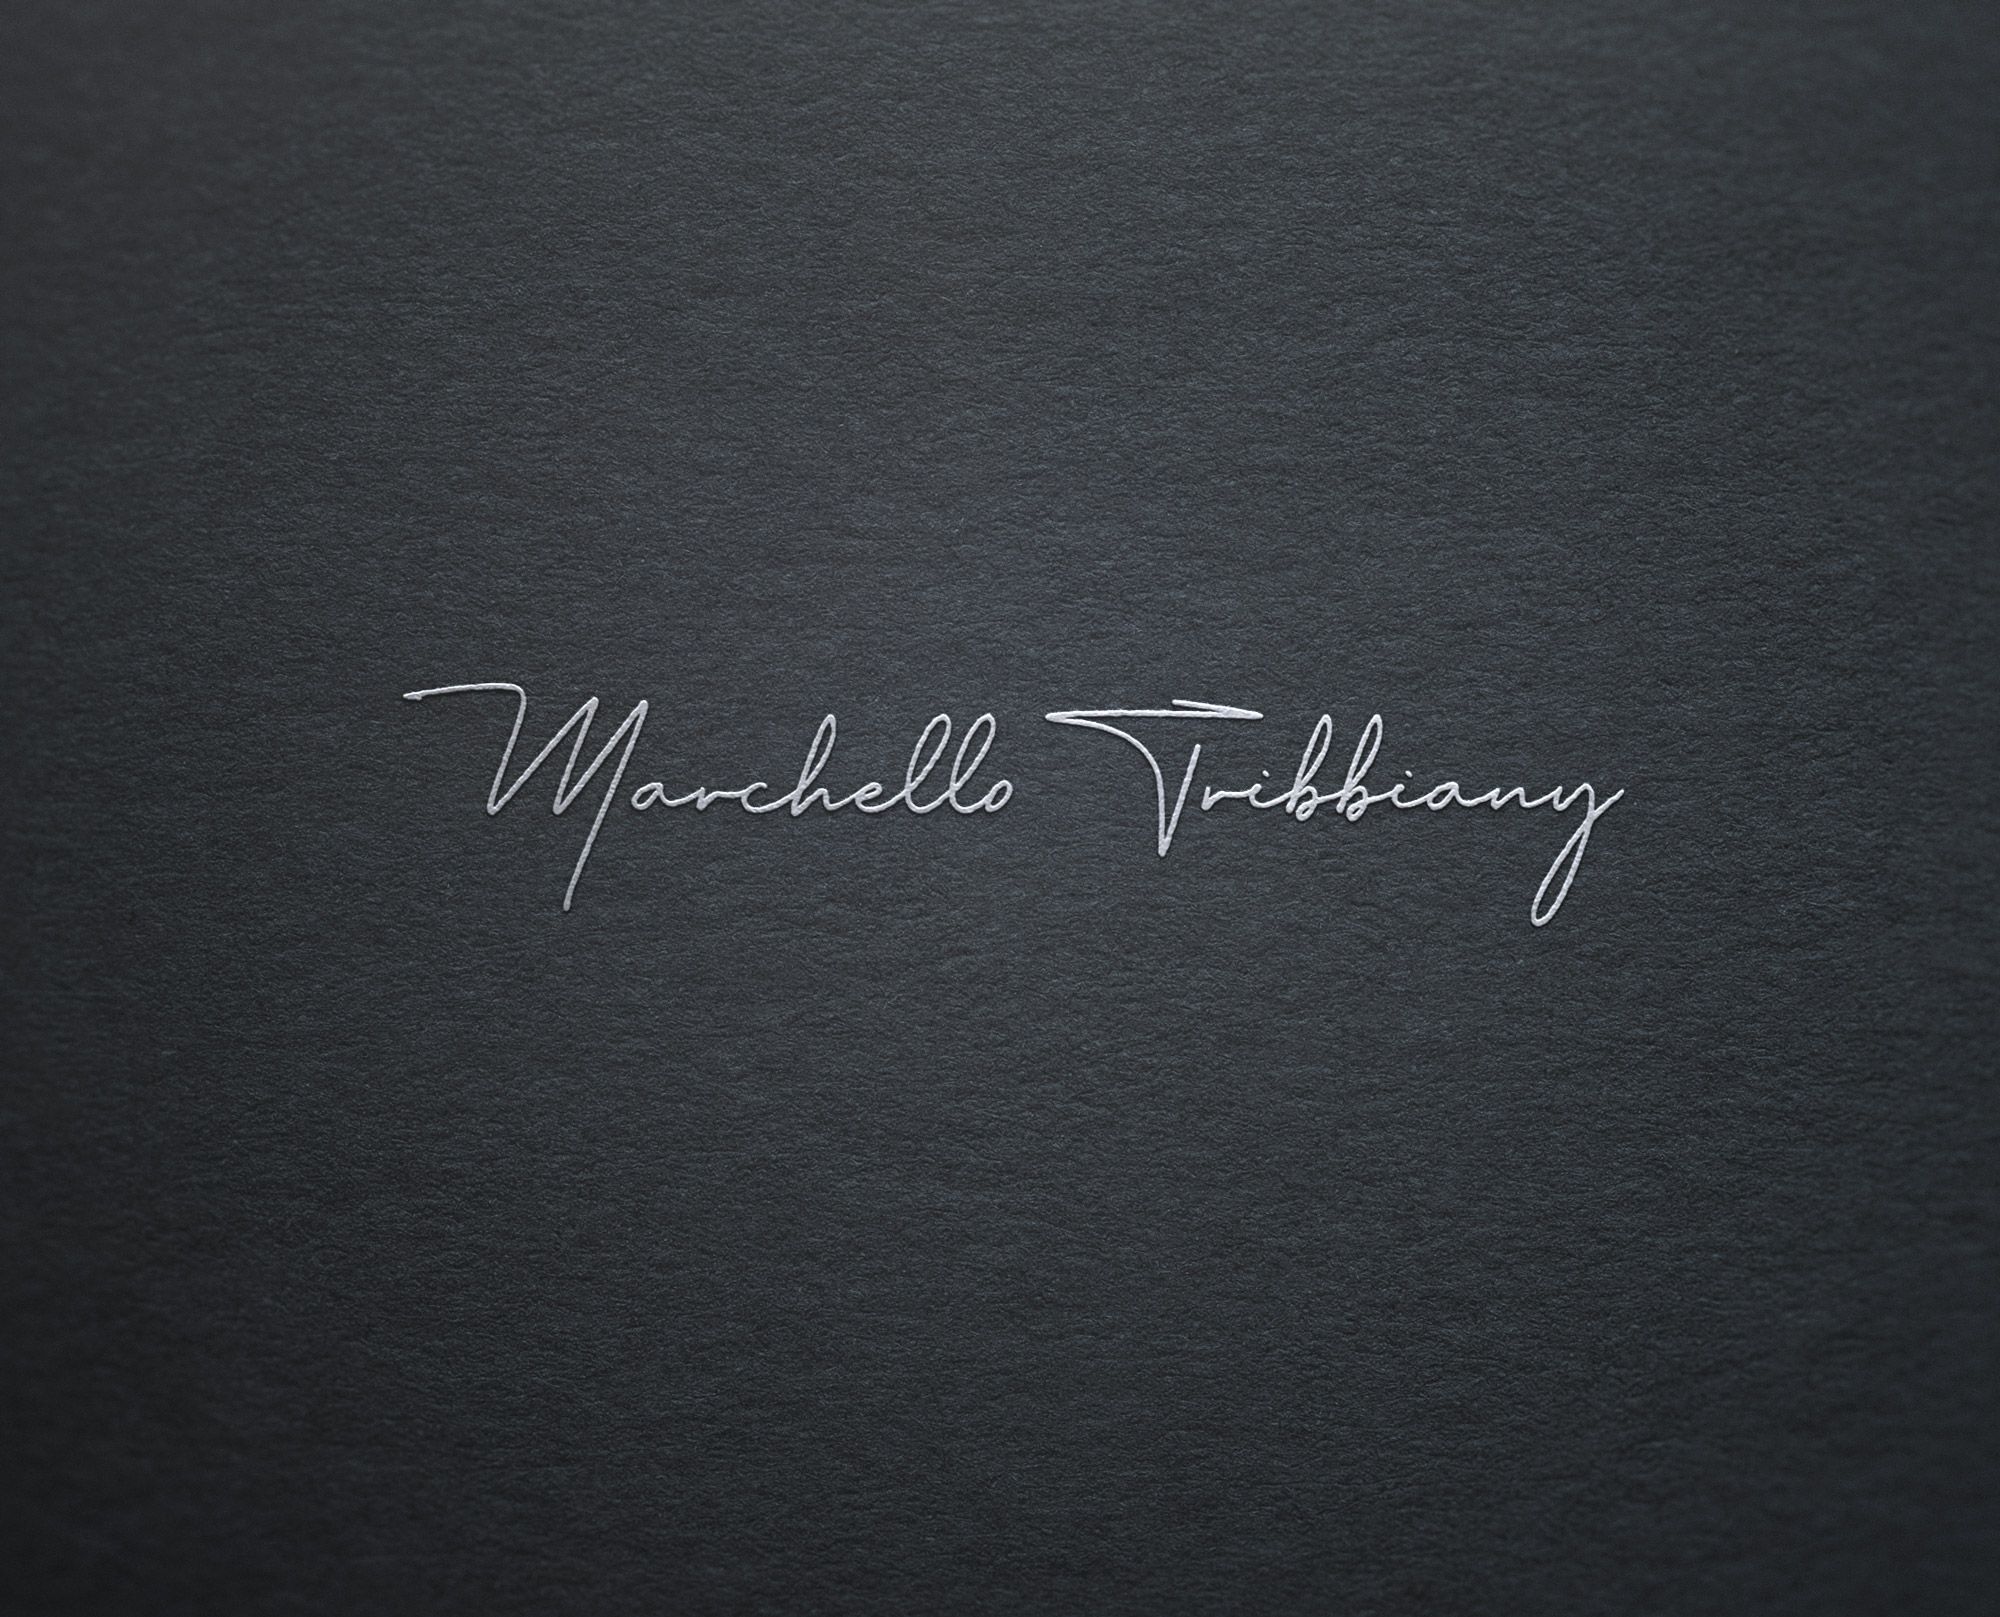 Логотип для Marchello Tribbiany - дизайнер Alphir